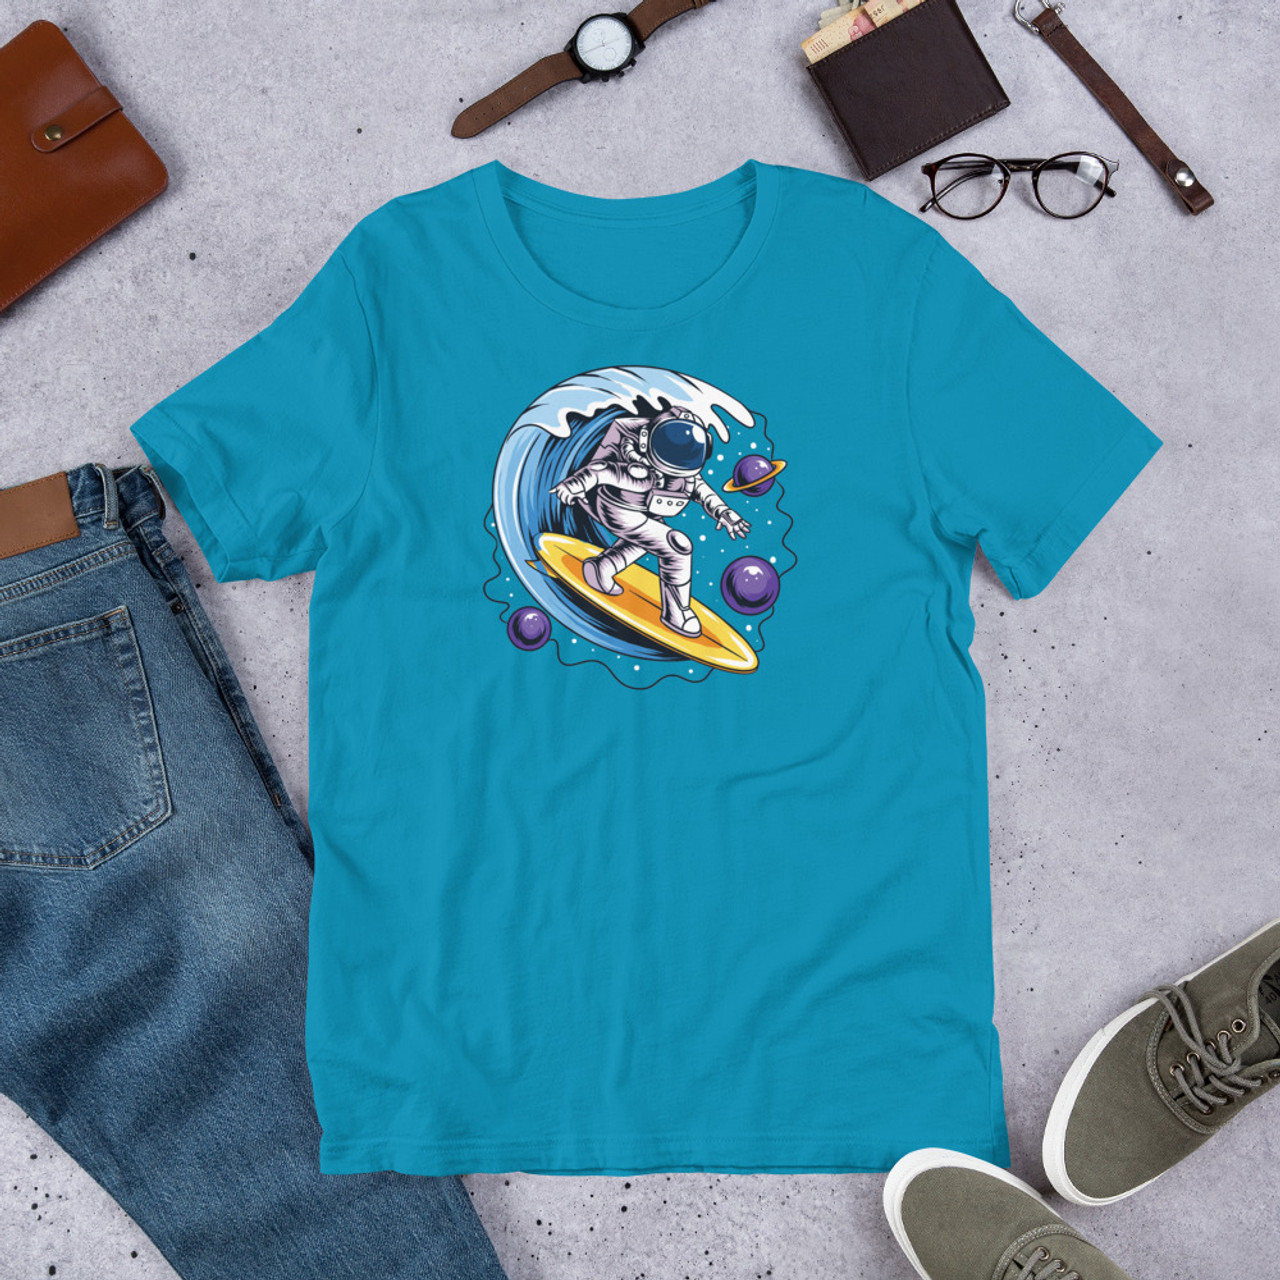 Aqua T-Shirt - Bella + Canvas 3001 Space Surfer